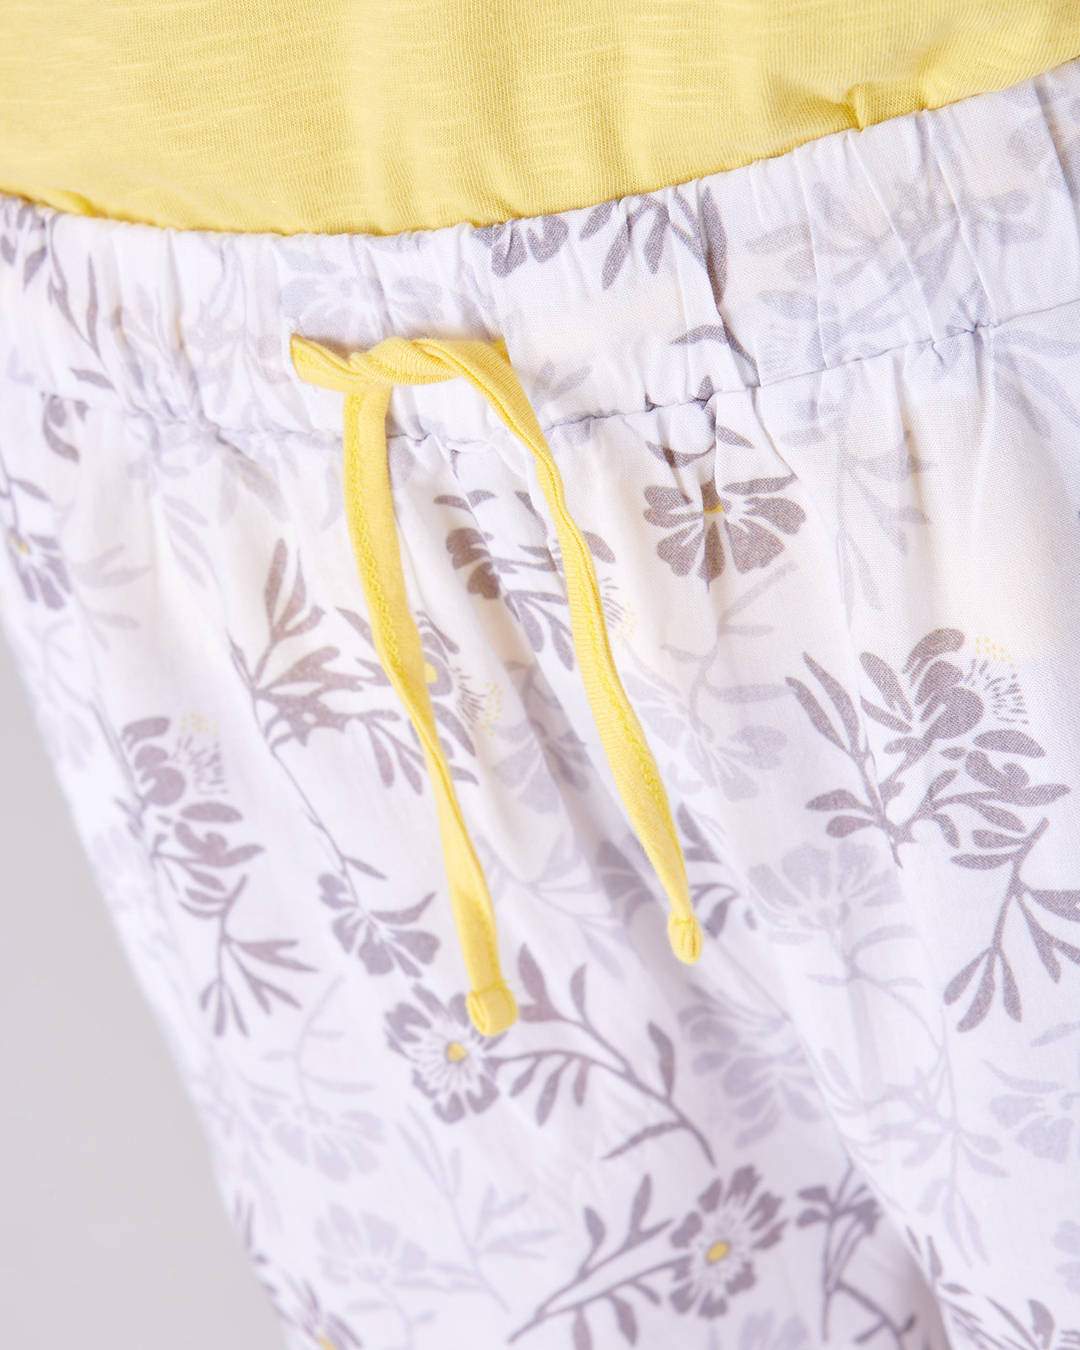 Dettaglio pantalone del pigiama a manica e gamba corta da donna floreale